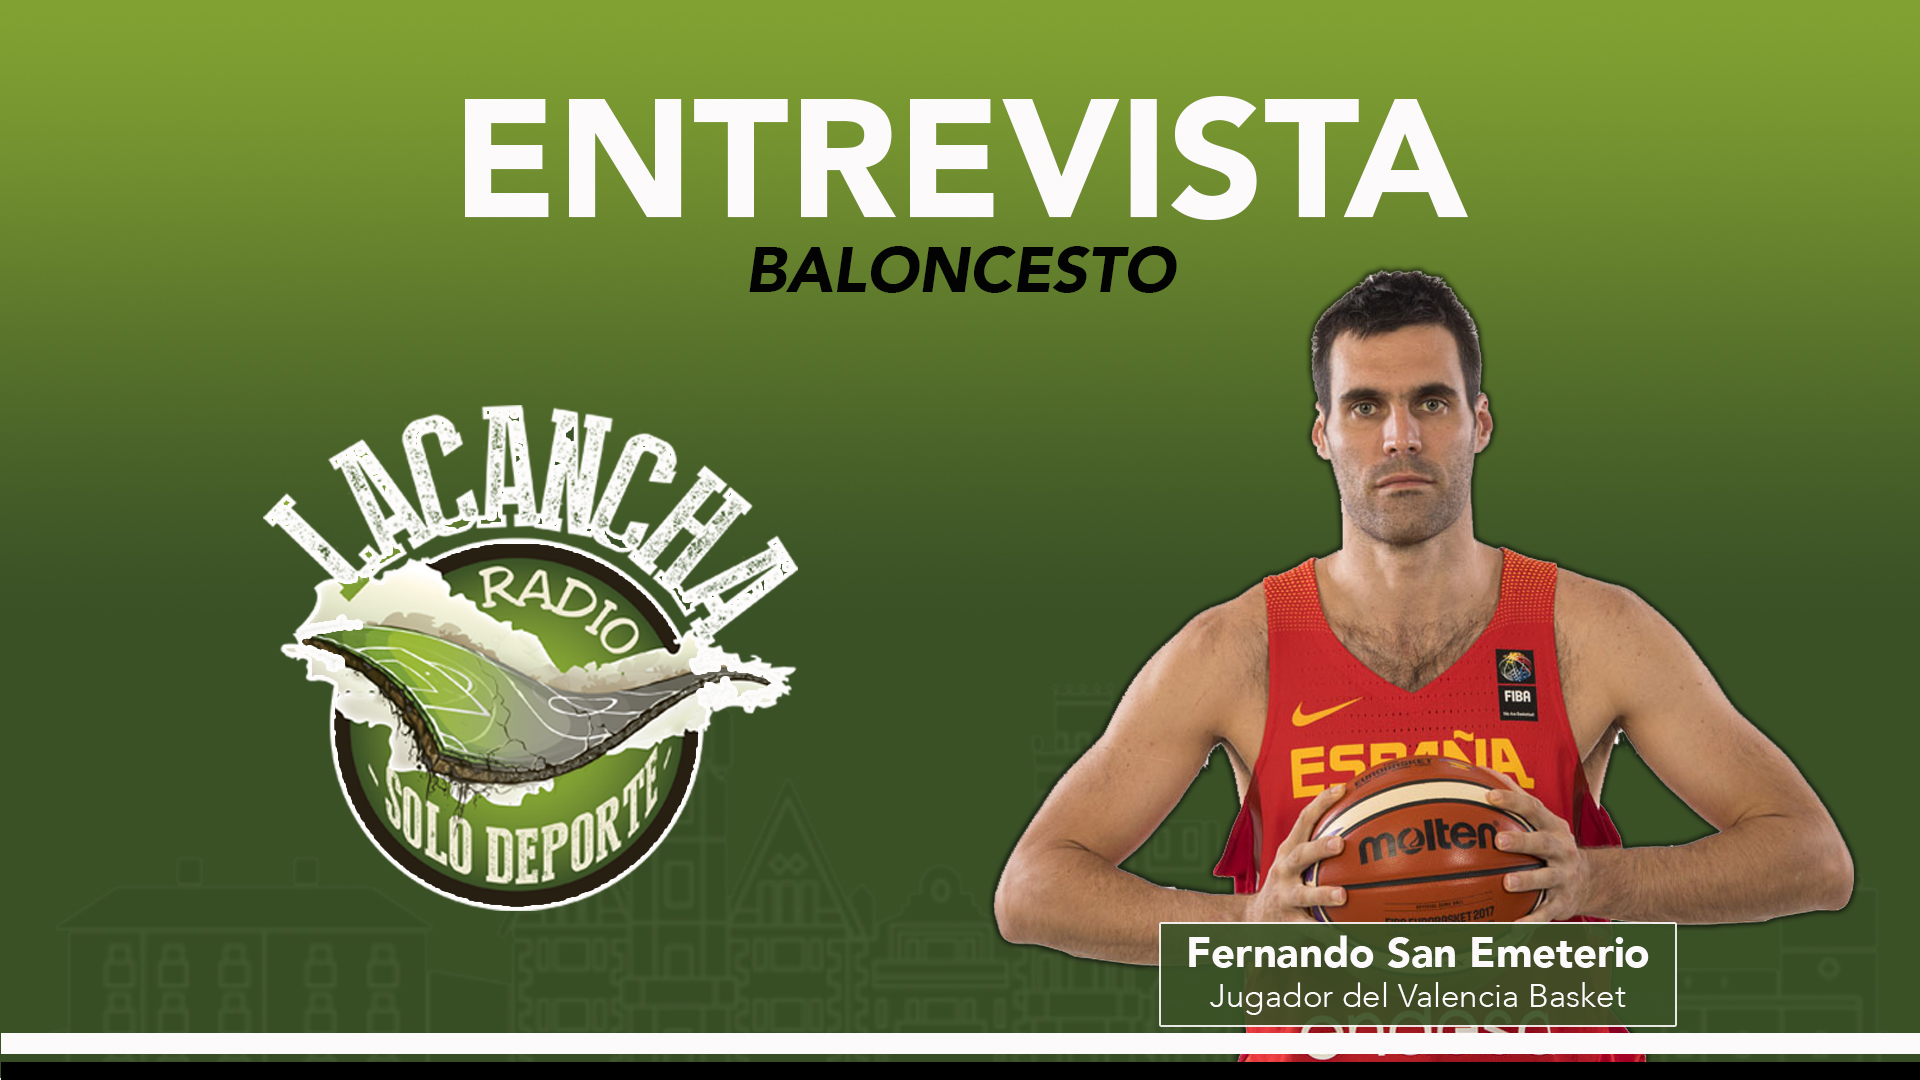 Entrevista con Fernando San Emeterio, jugador del Valencia Basket – La Cancha